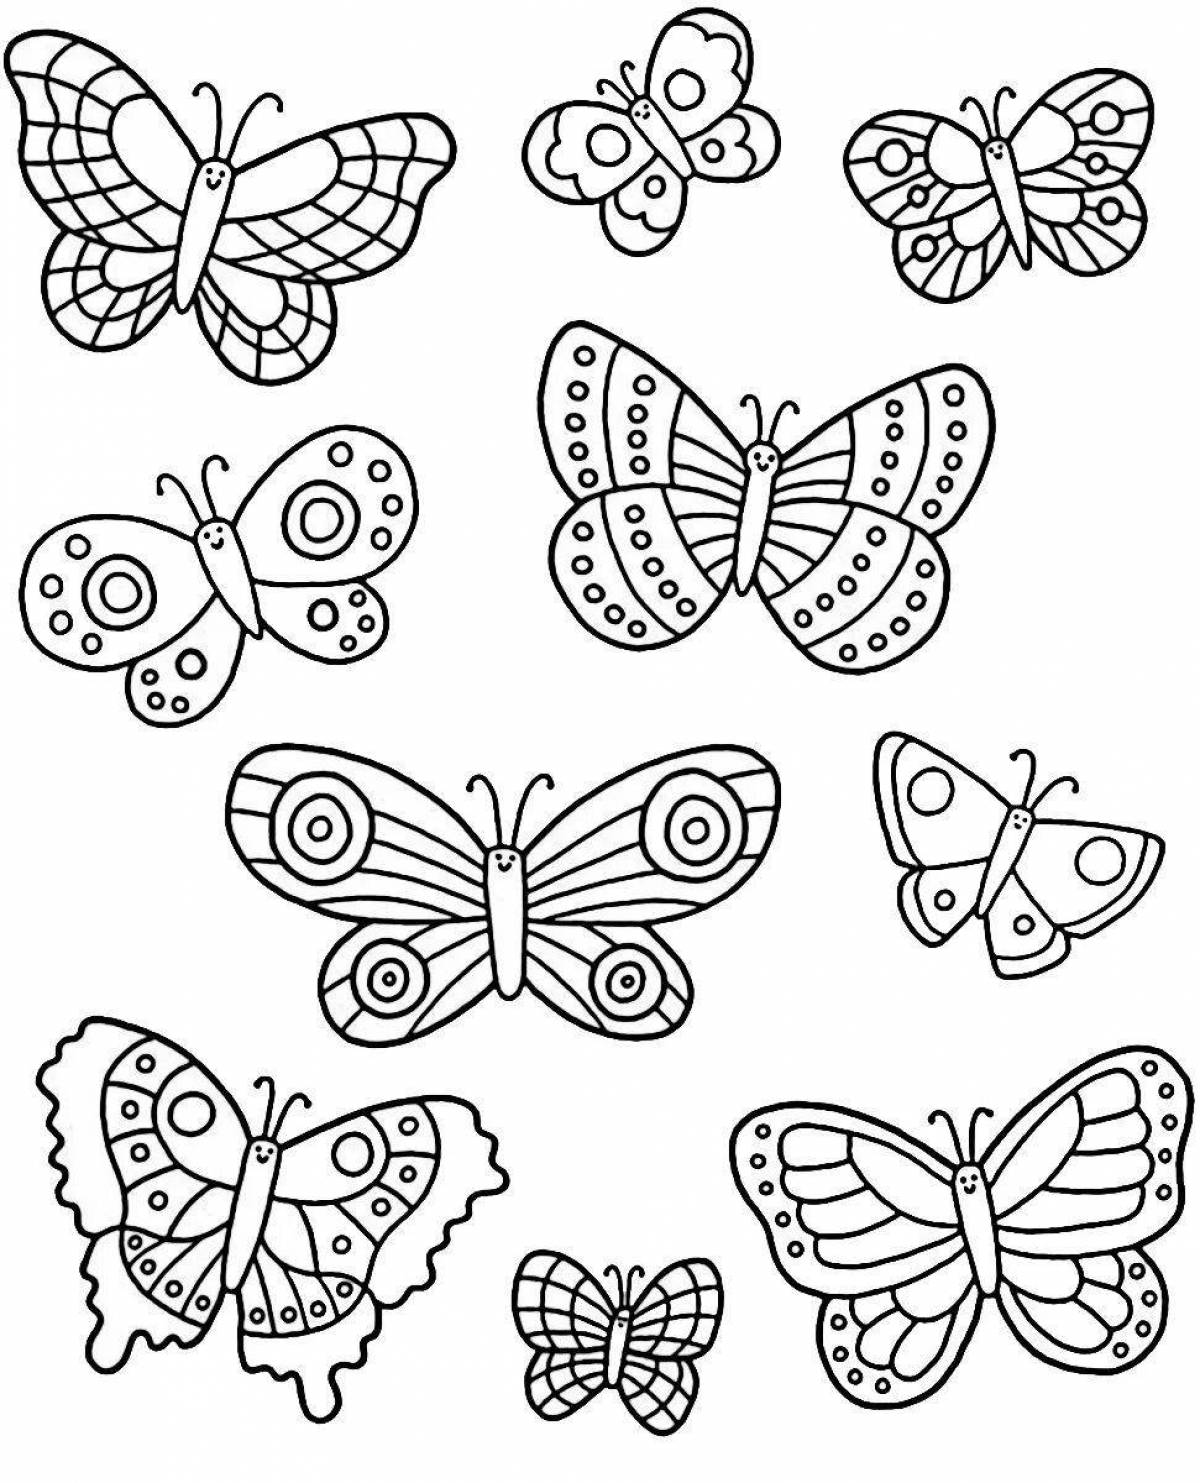 Coloring little playful butterflies